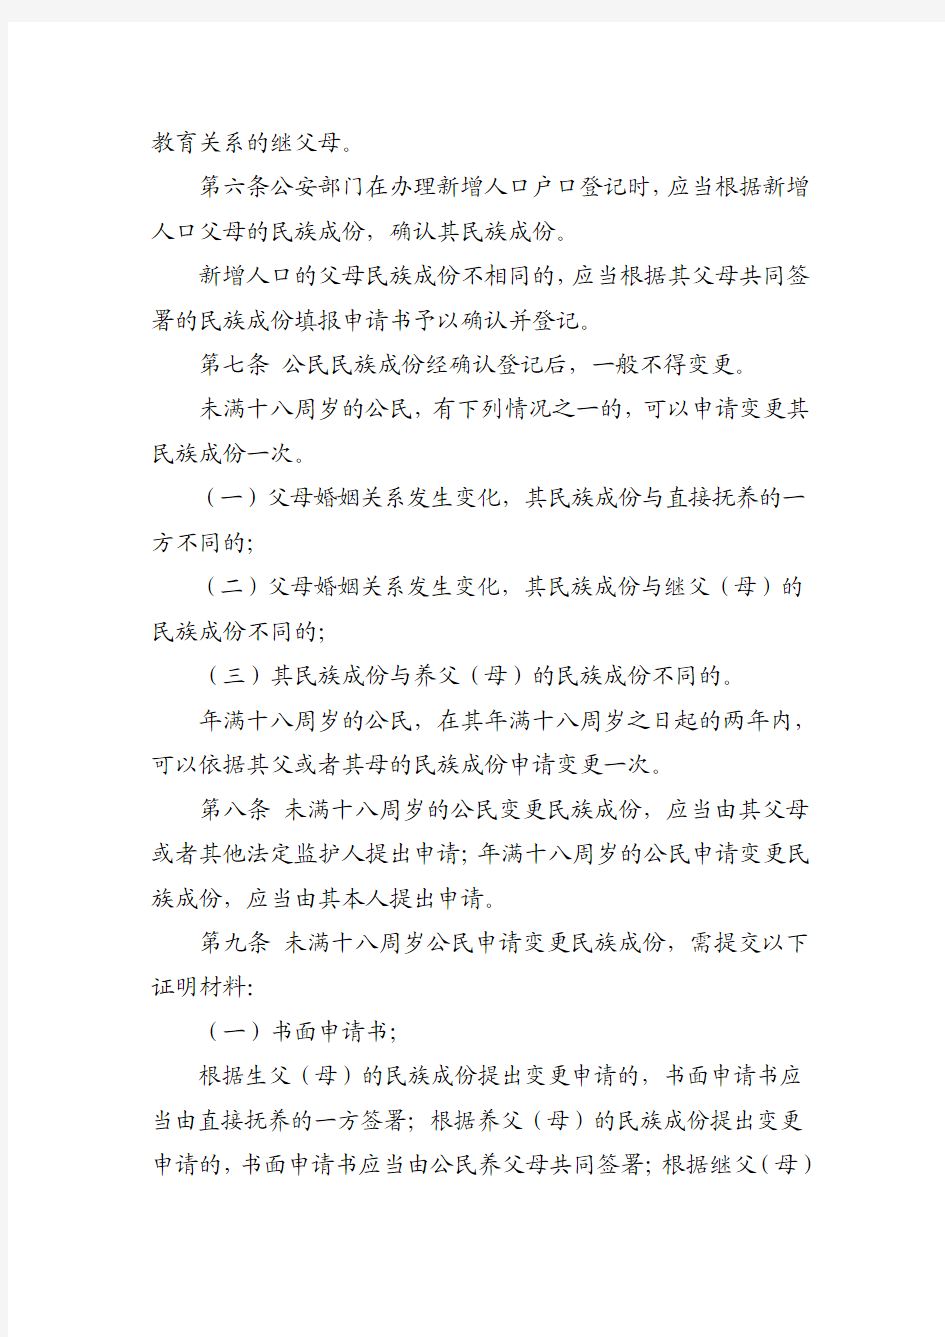 2015年6月16日中国公民民族成份登记管理办法